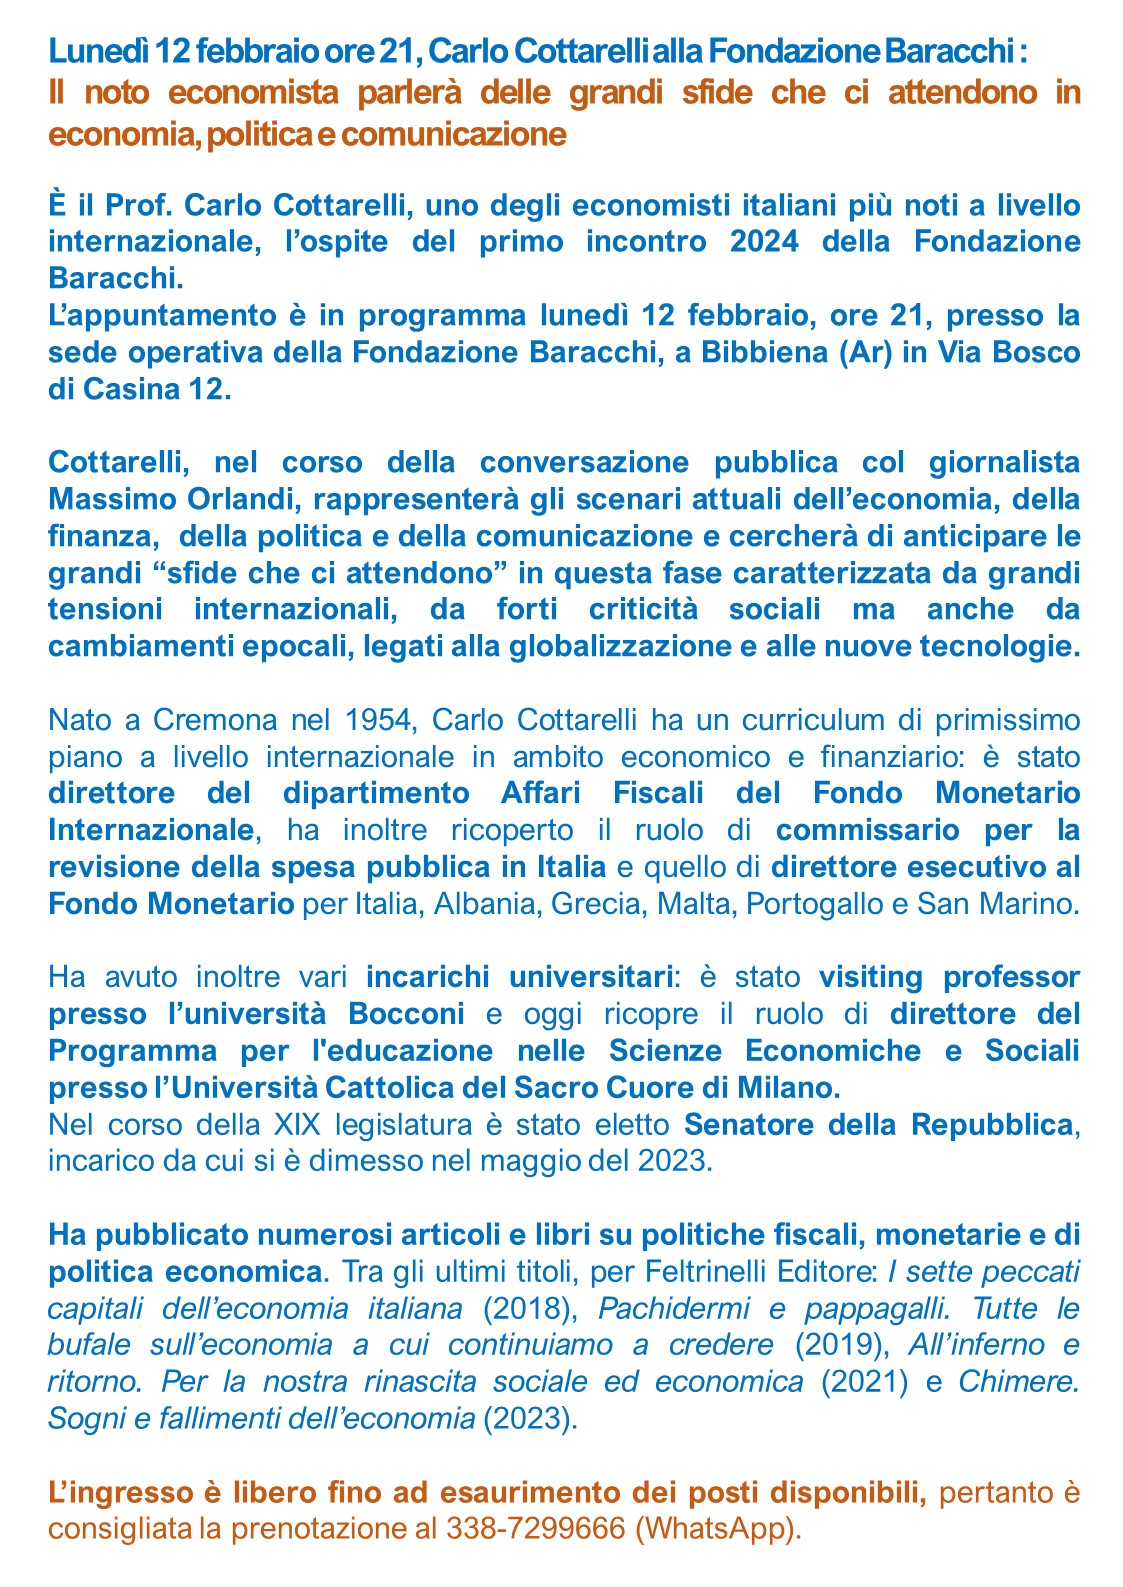 Comunicato Cottarelli 12 febbraio